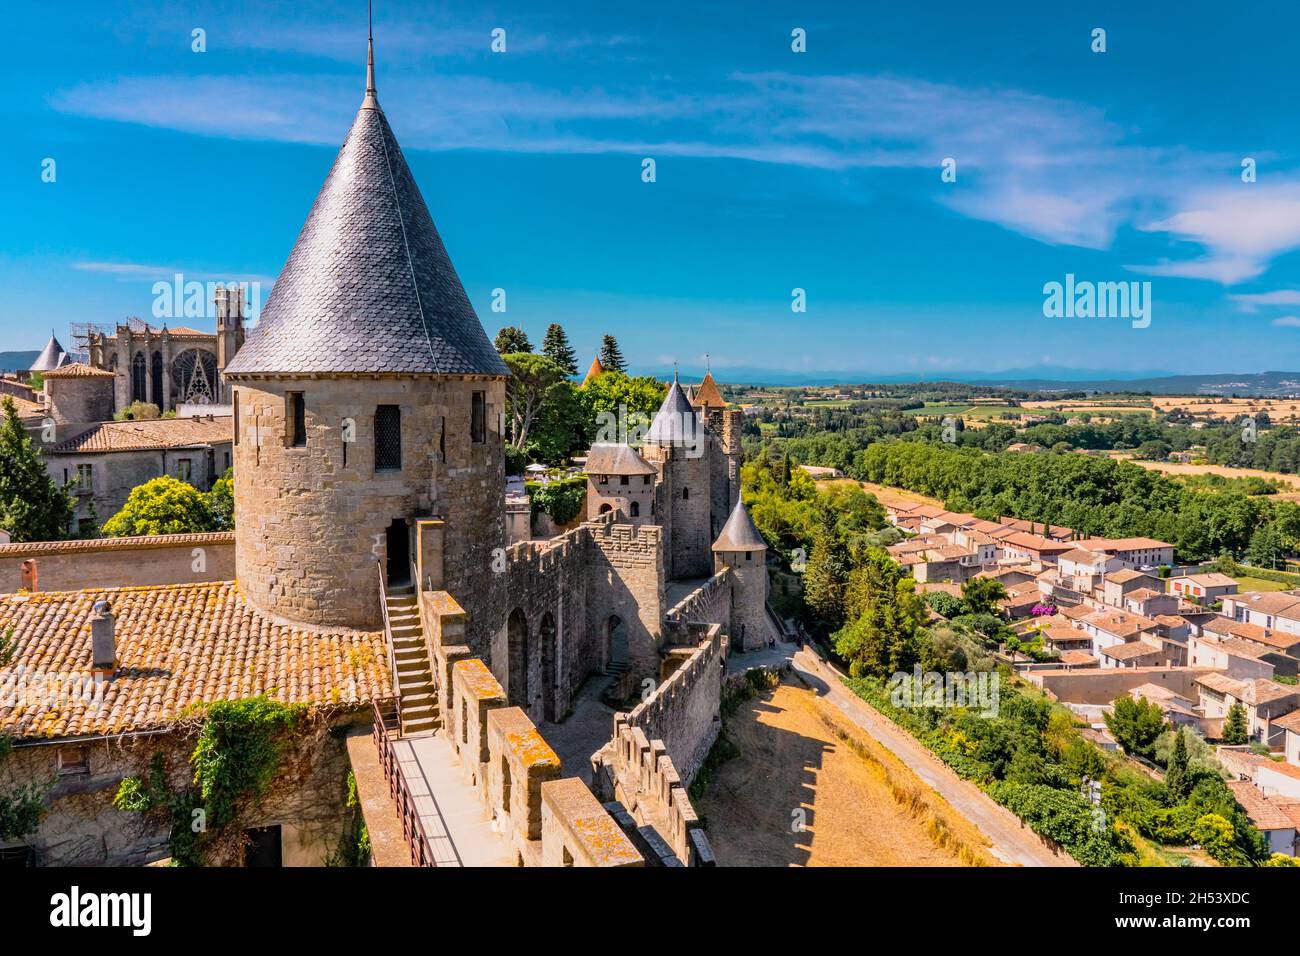 Vista panoramica della cittadella medievale Carcassonne dalle mura del castello della città di Carcassonne. Antichi monumenti storici d'Europa nel sud della Francia. Foto di alta qualità Foto Stock